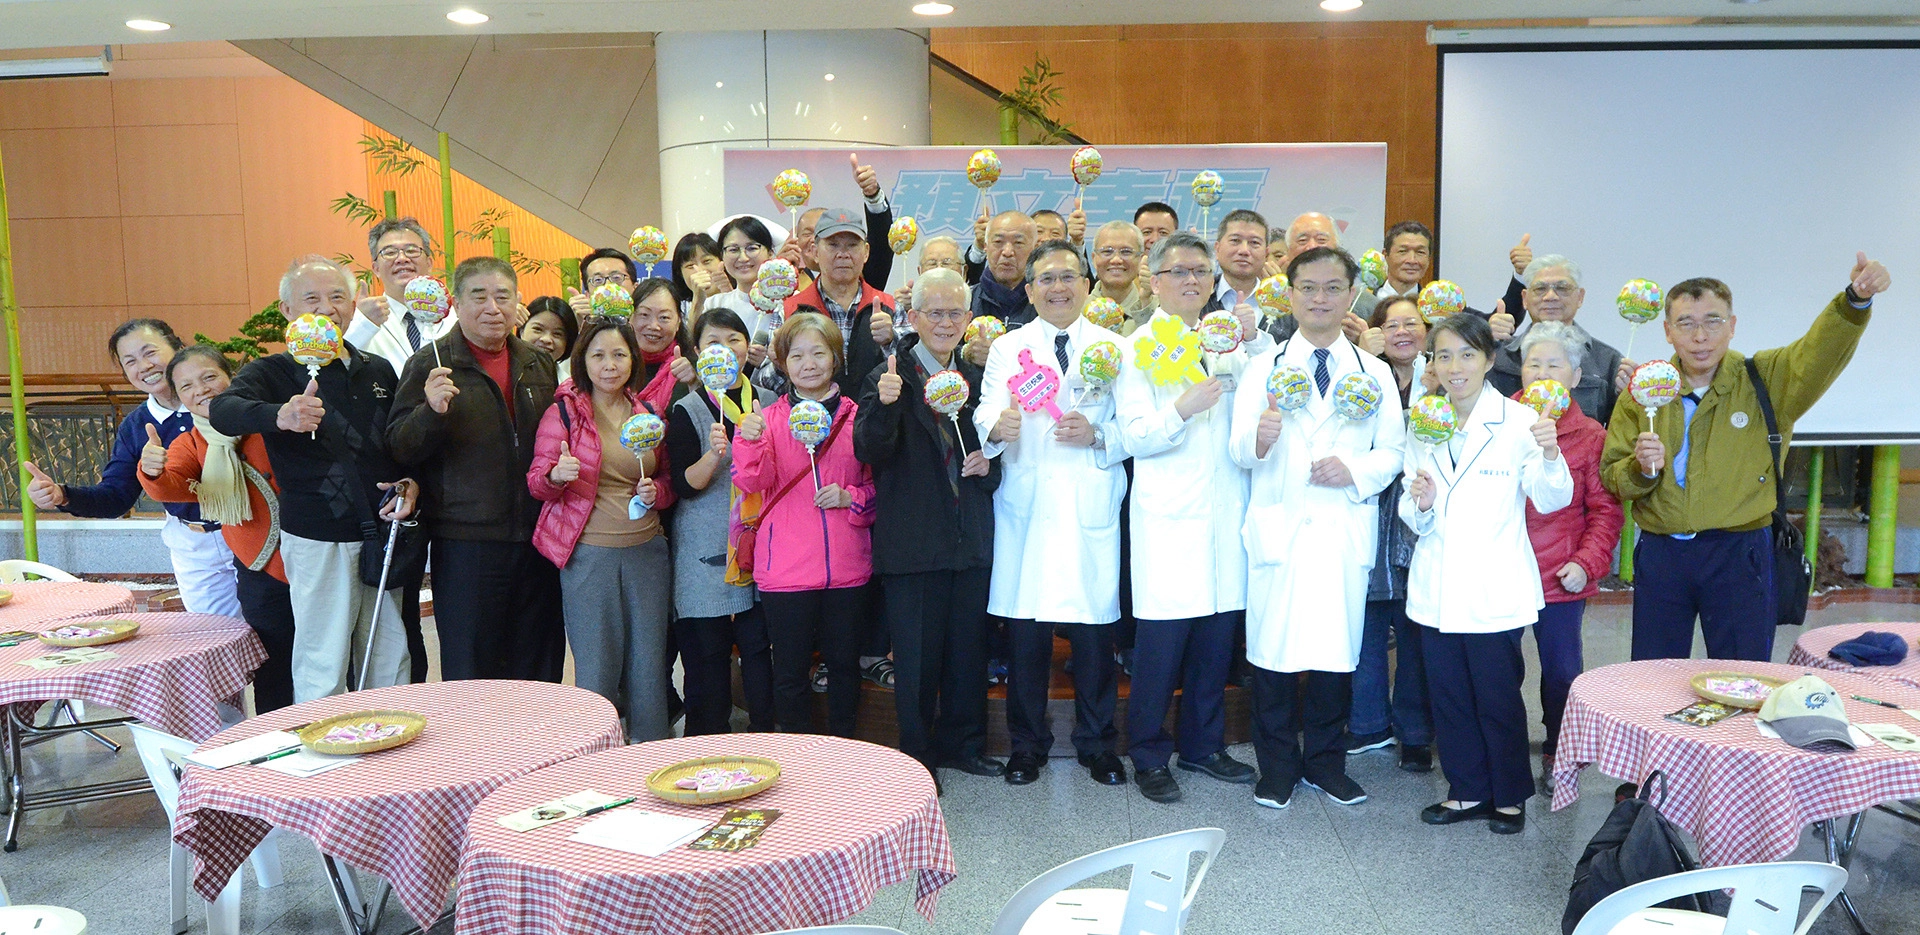 台北慈濟醫院舉辦「預立幸福 讓愛傳遞」器官捐贈、安寧療護及預立醫療決定意願宣導活動